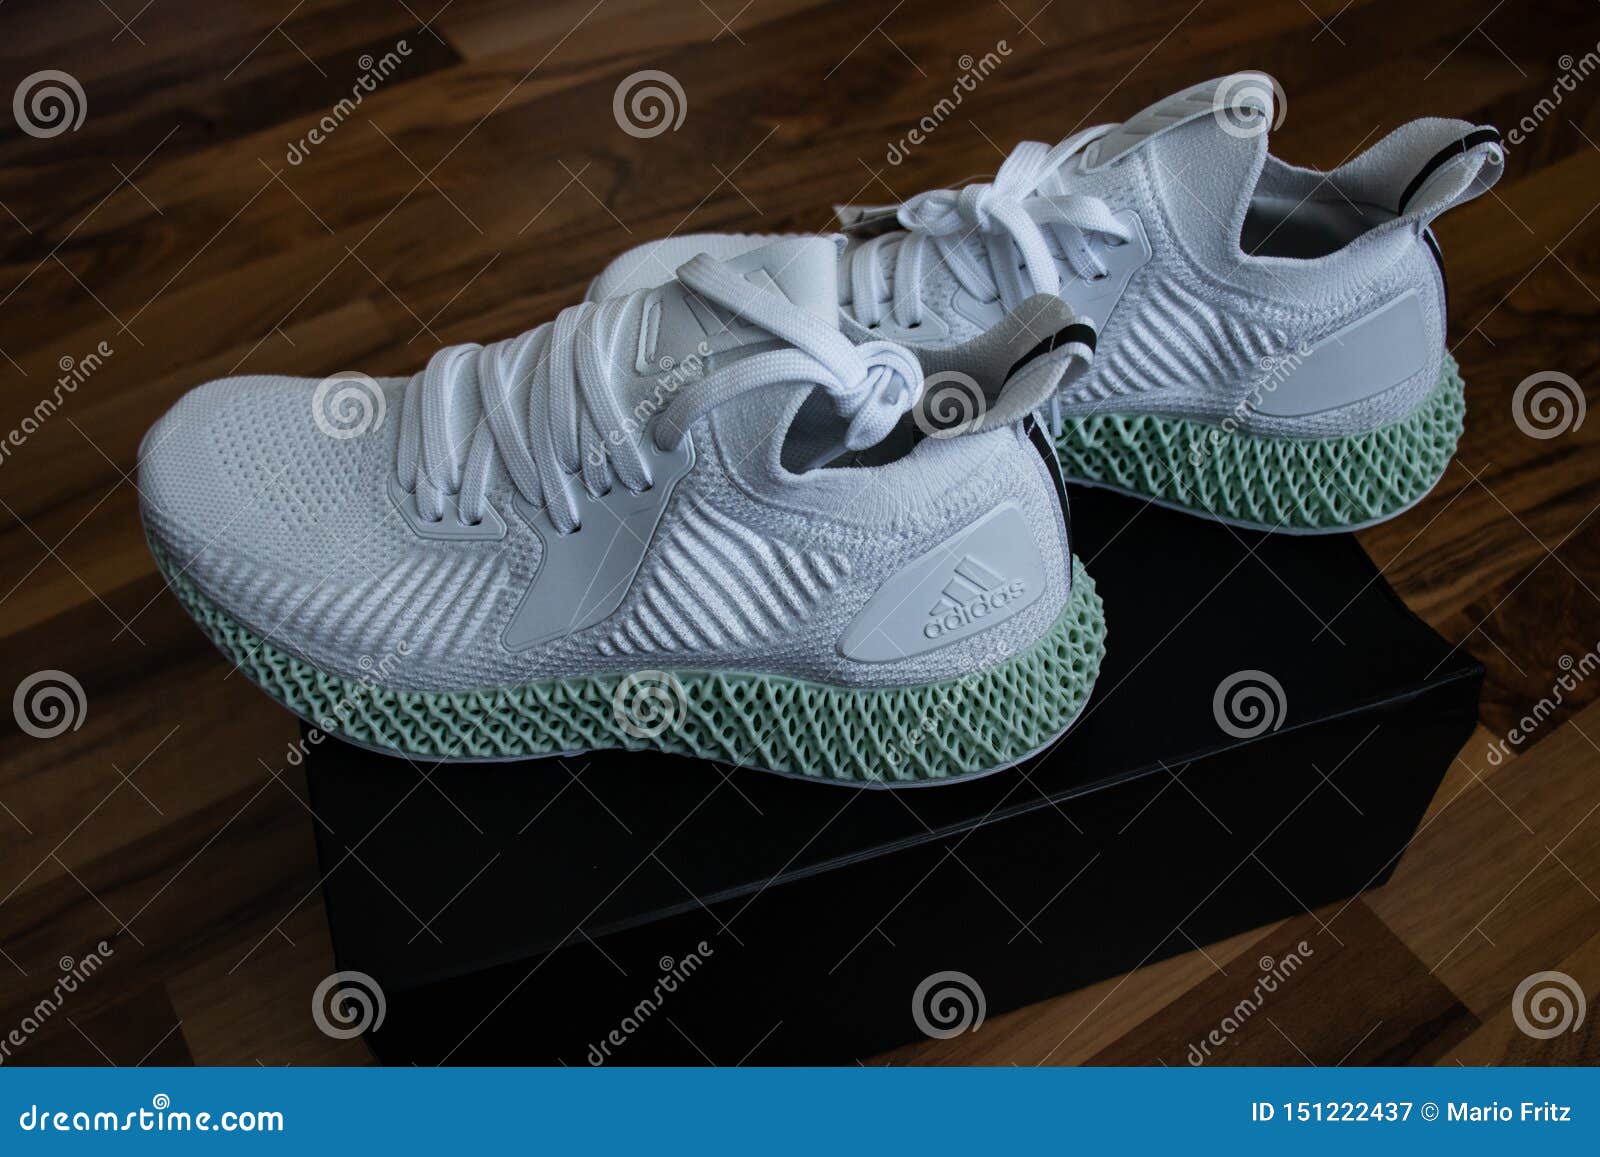 Zapatos Alphaedge 4D De Adidas En Blanco Y Verde Fotografía editorial - Imagen de ejercicio: 151222437